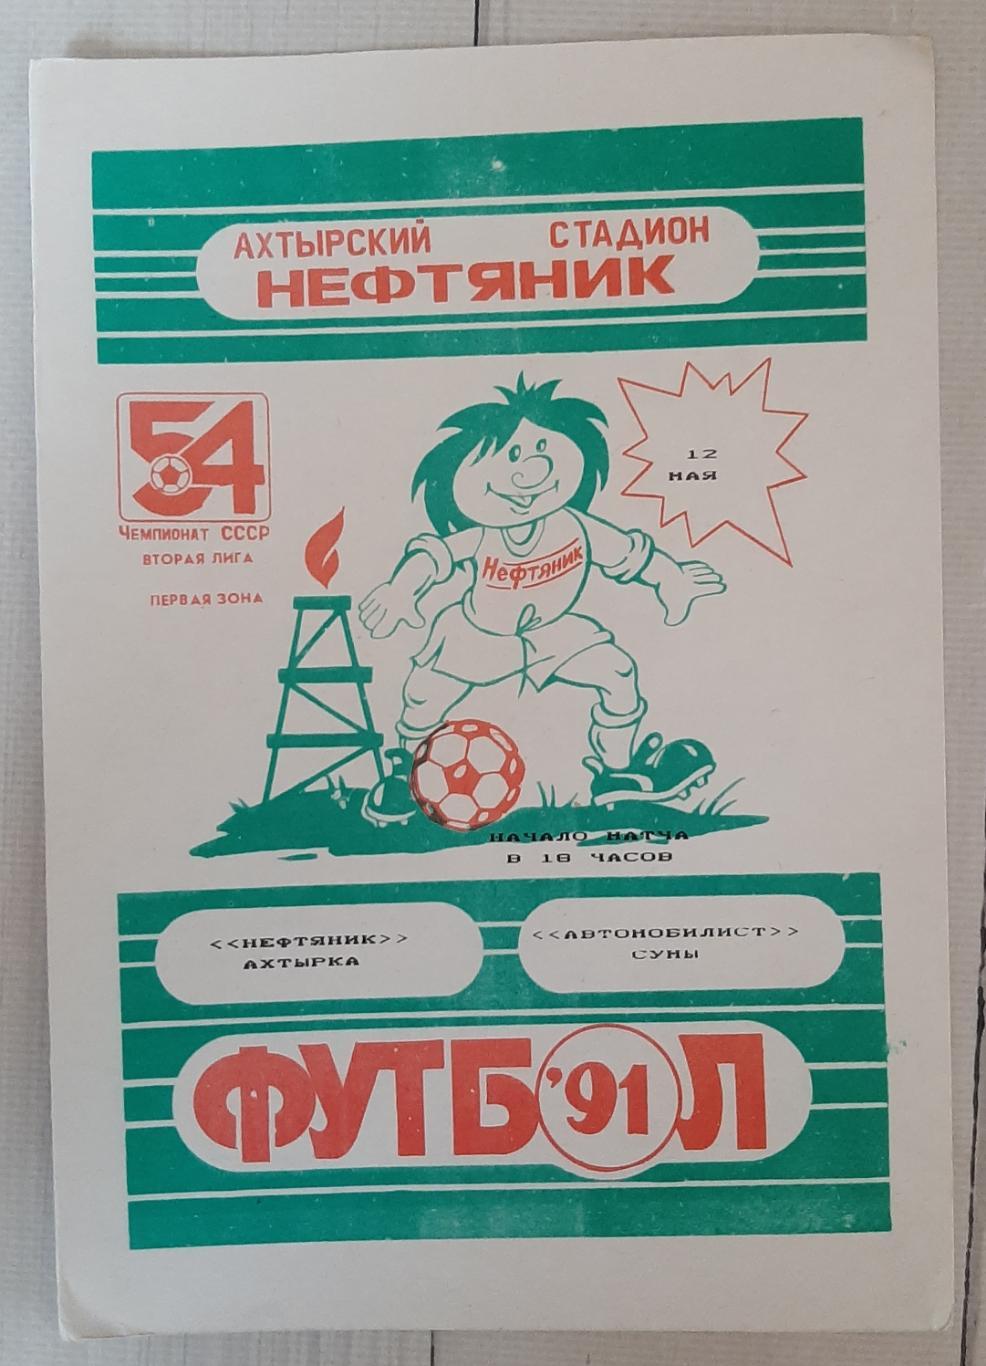 Нафтовик Охтирка - Автомобіліст Суми 12.05.1991.